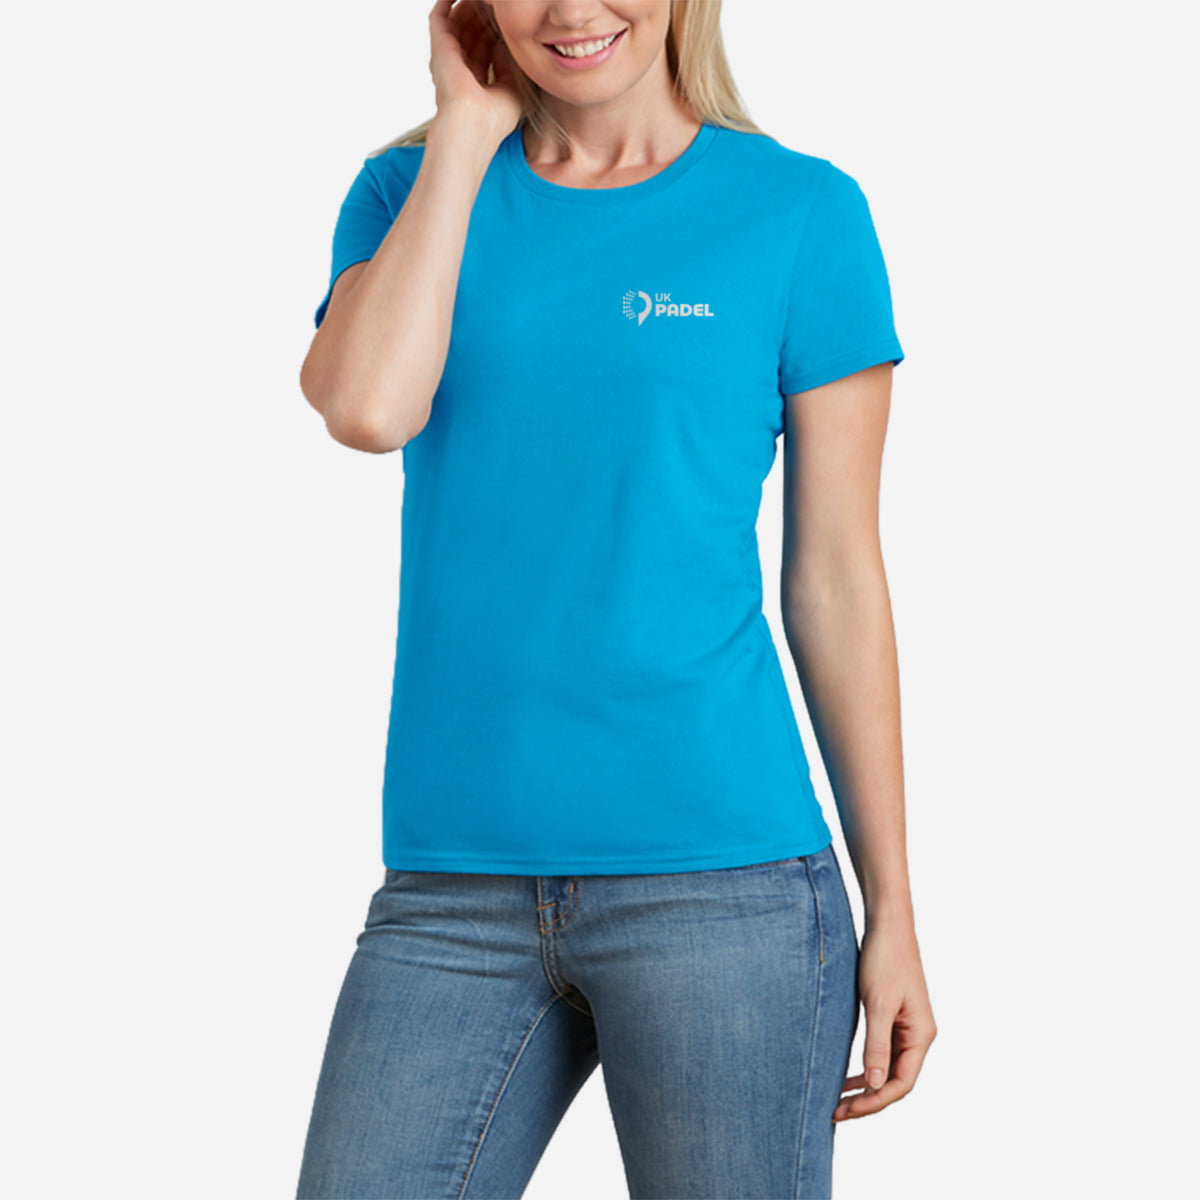 UK Padel Softstyle™ women's ringspun t-shirt ( UK Padel logo)